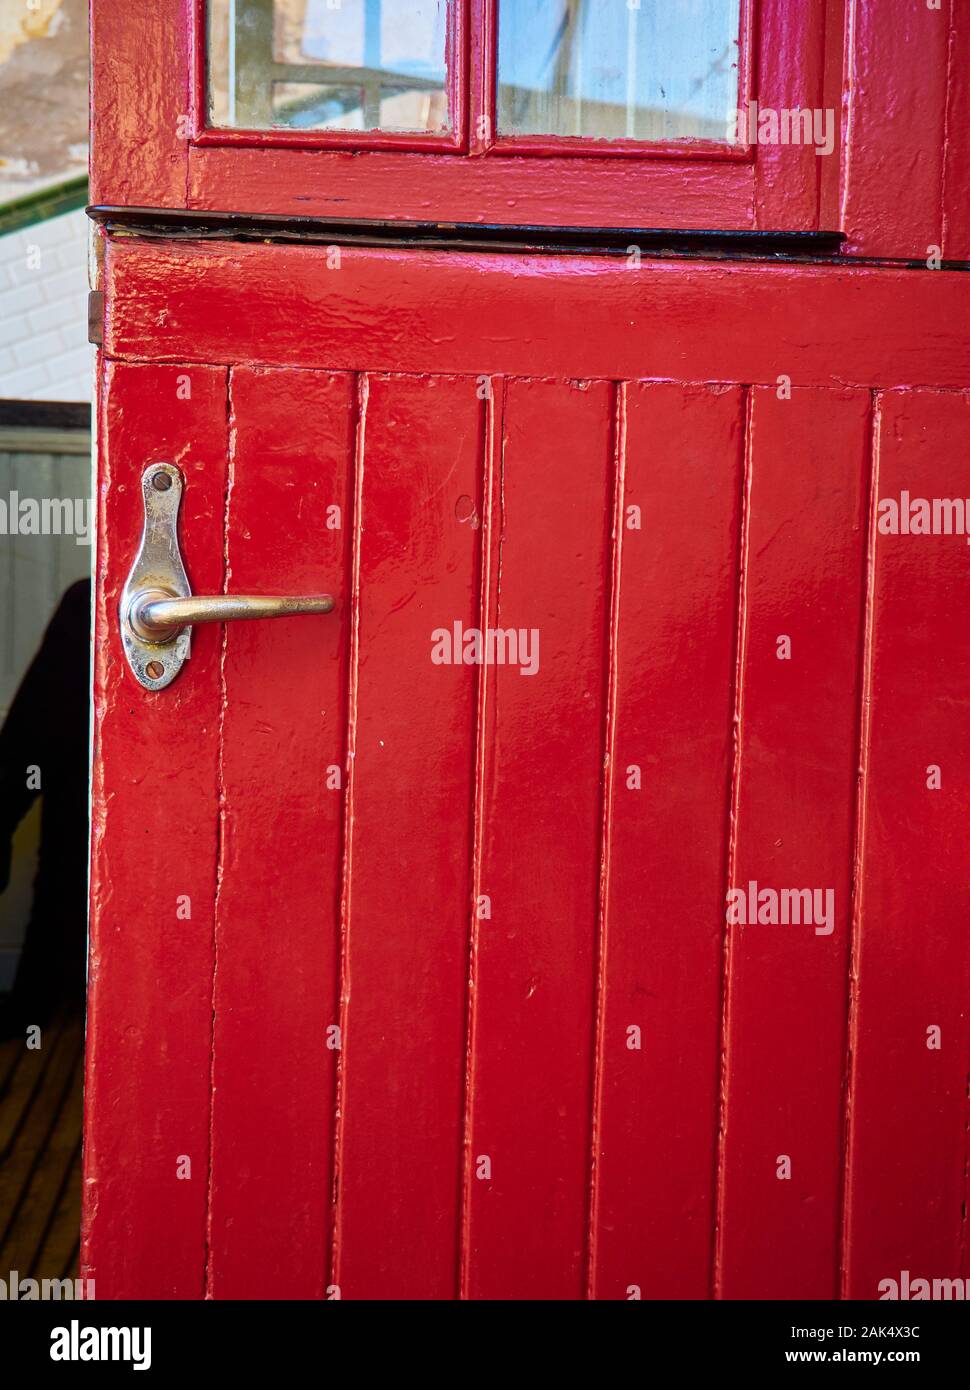 Antique red wooden door with a metallic door handle. Stock Photo